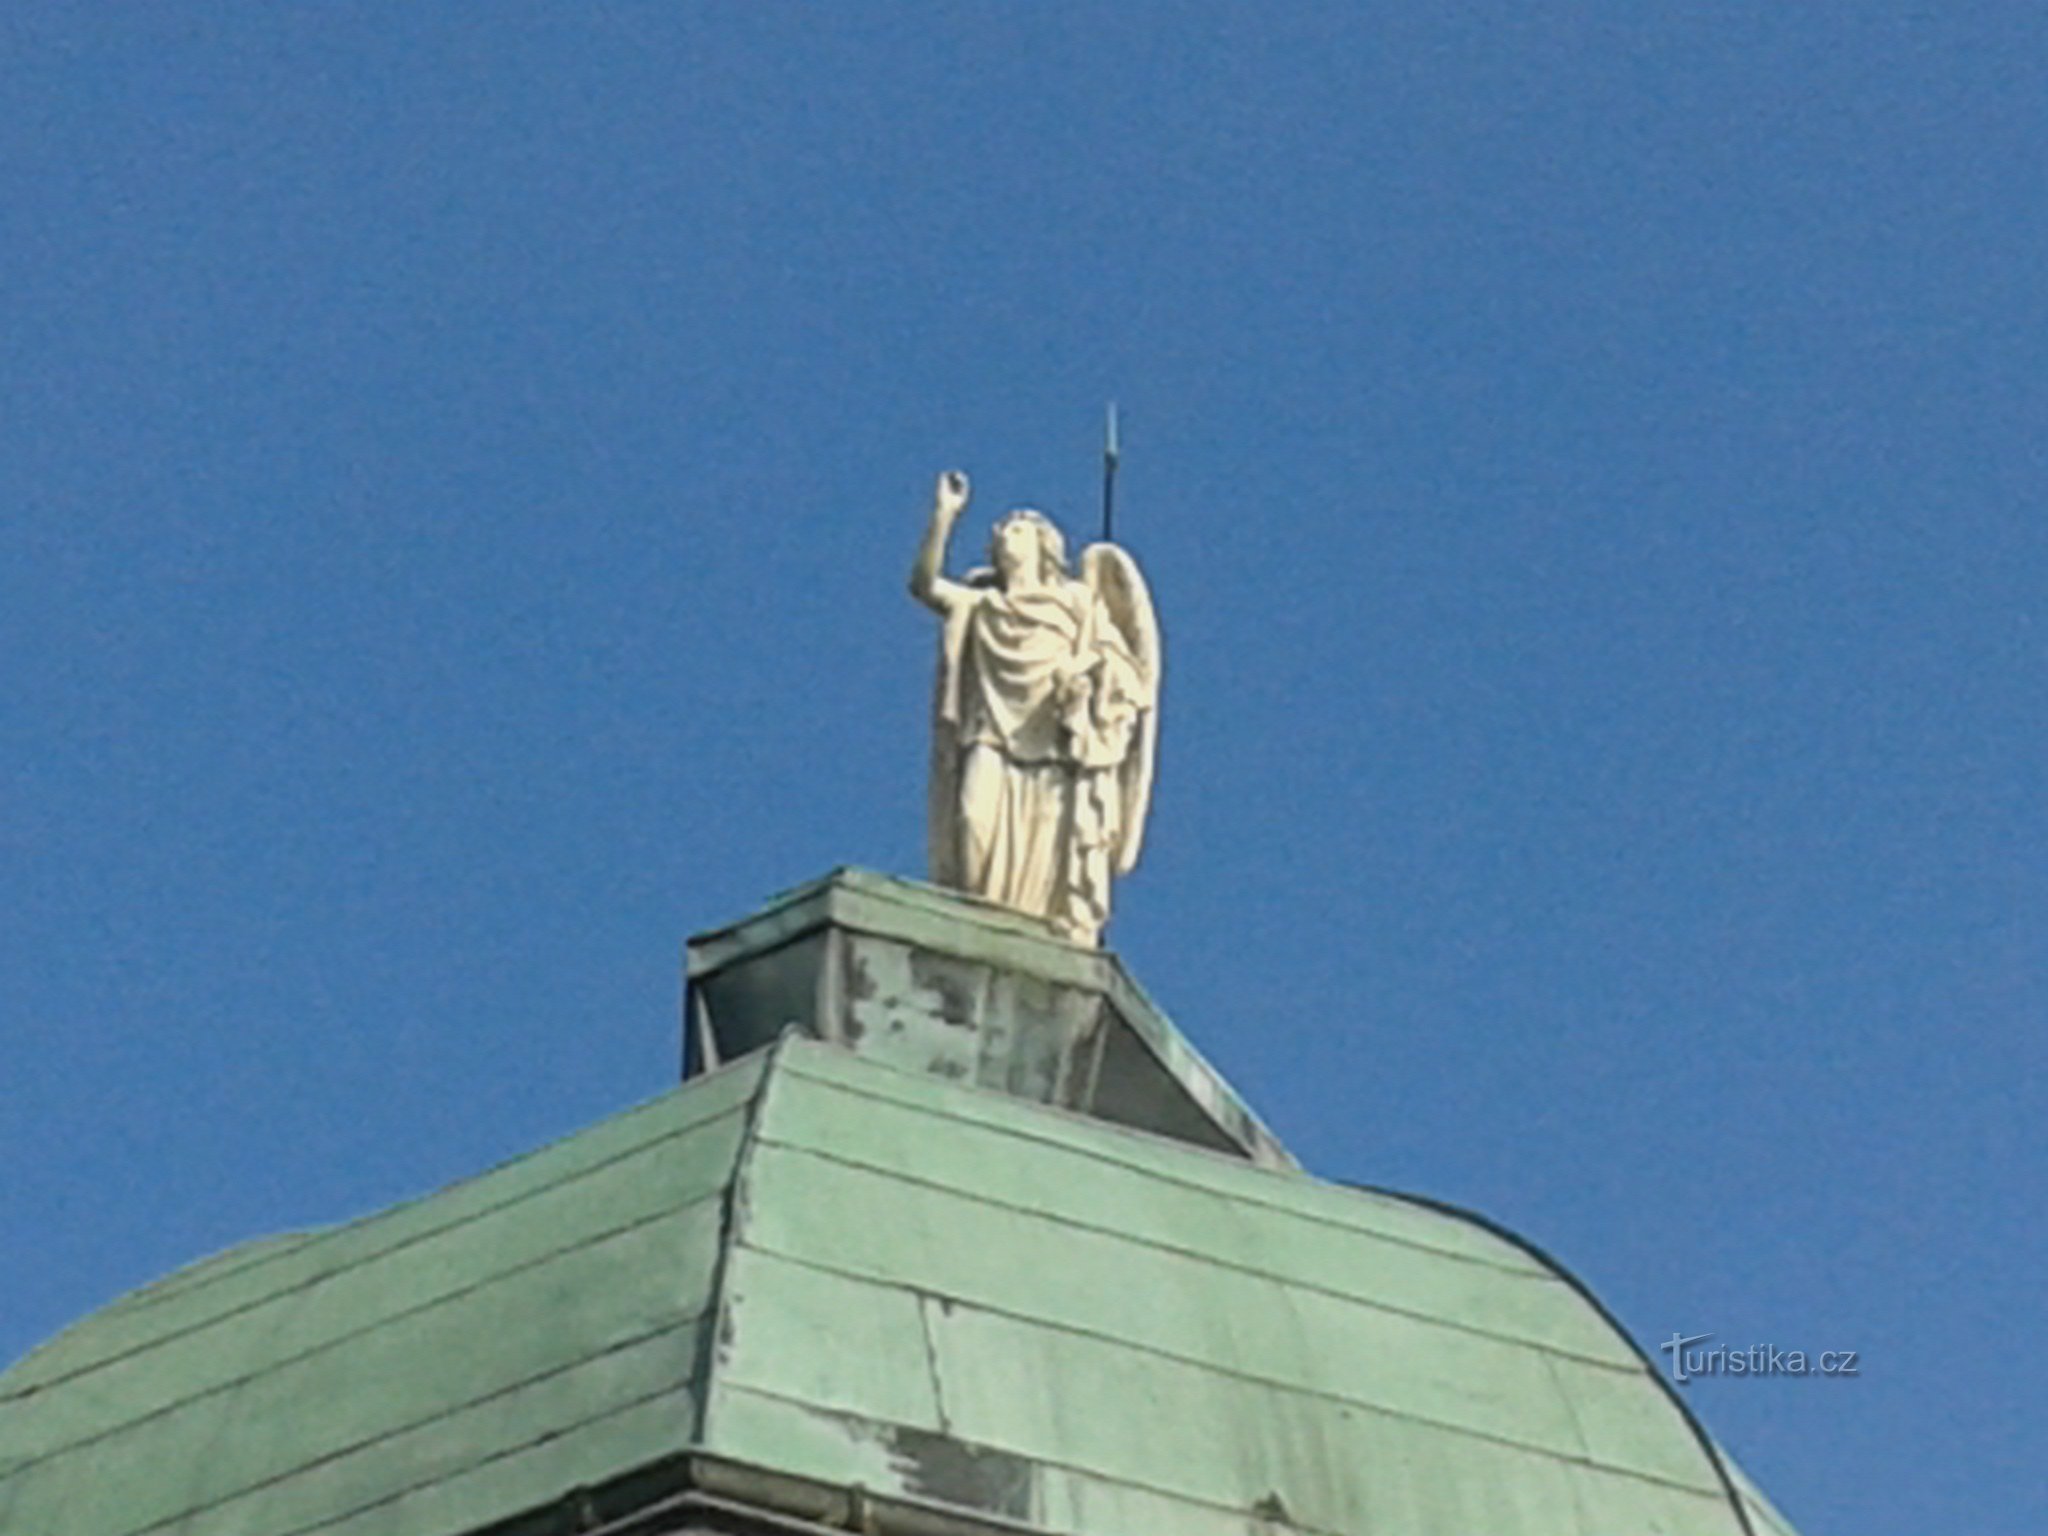 standbeeld van een engel op het administratiegebouw